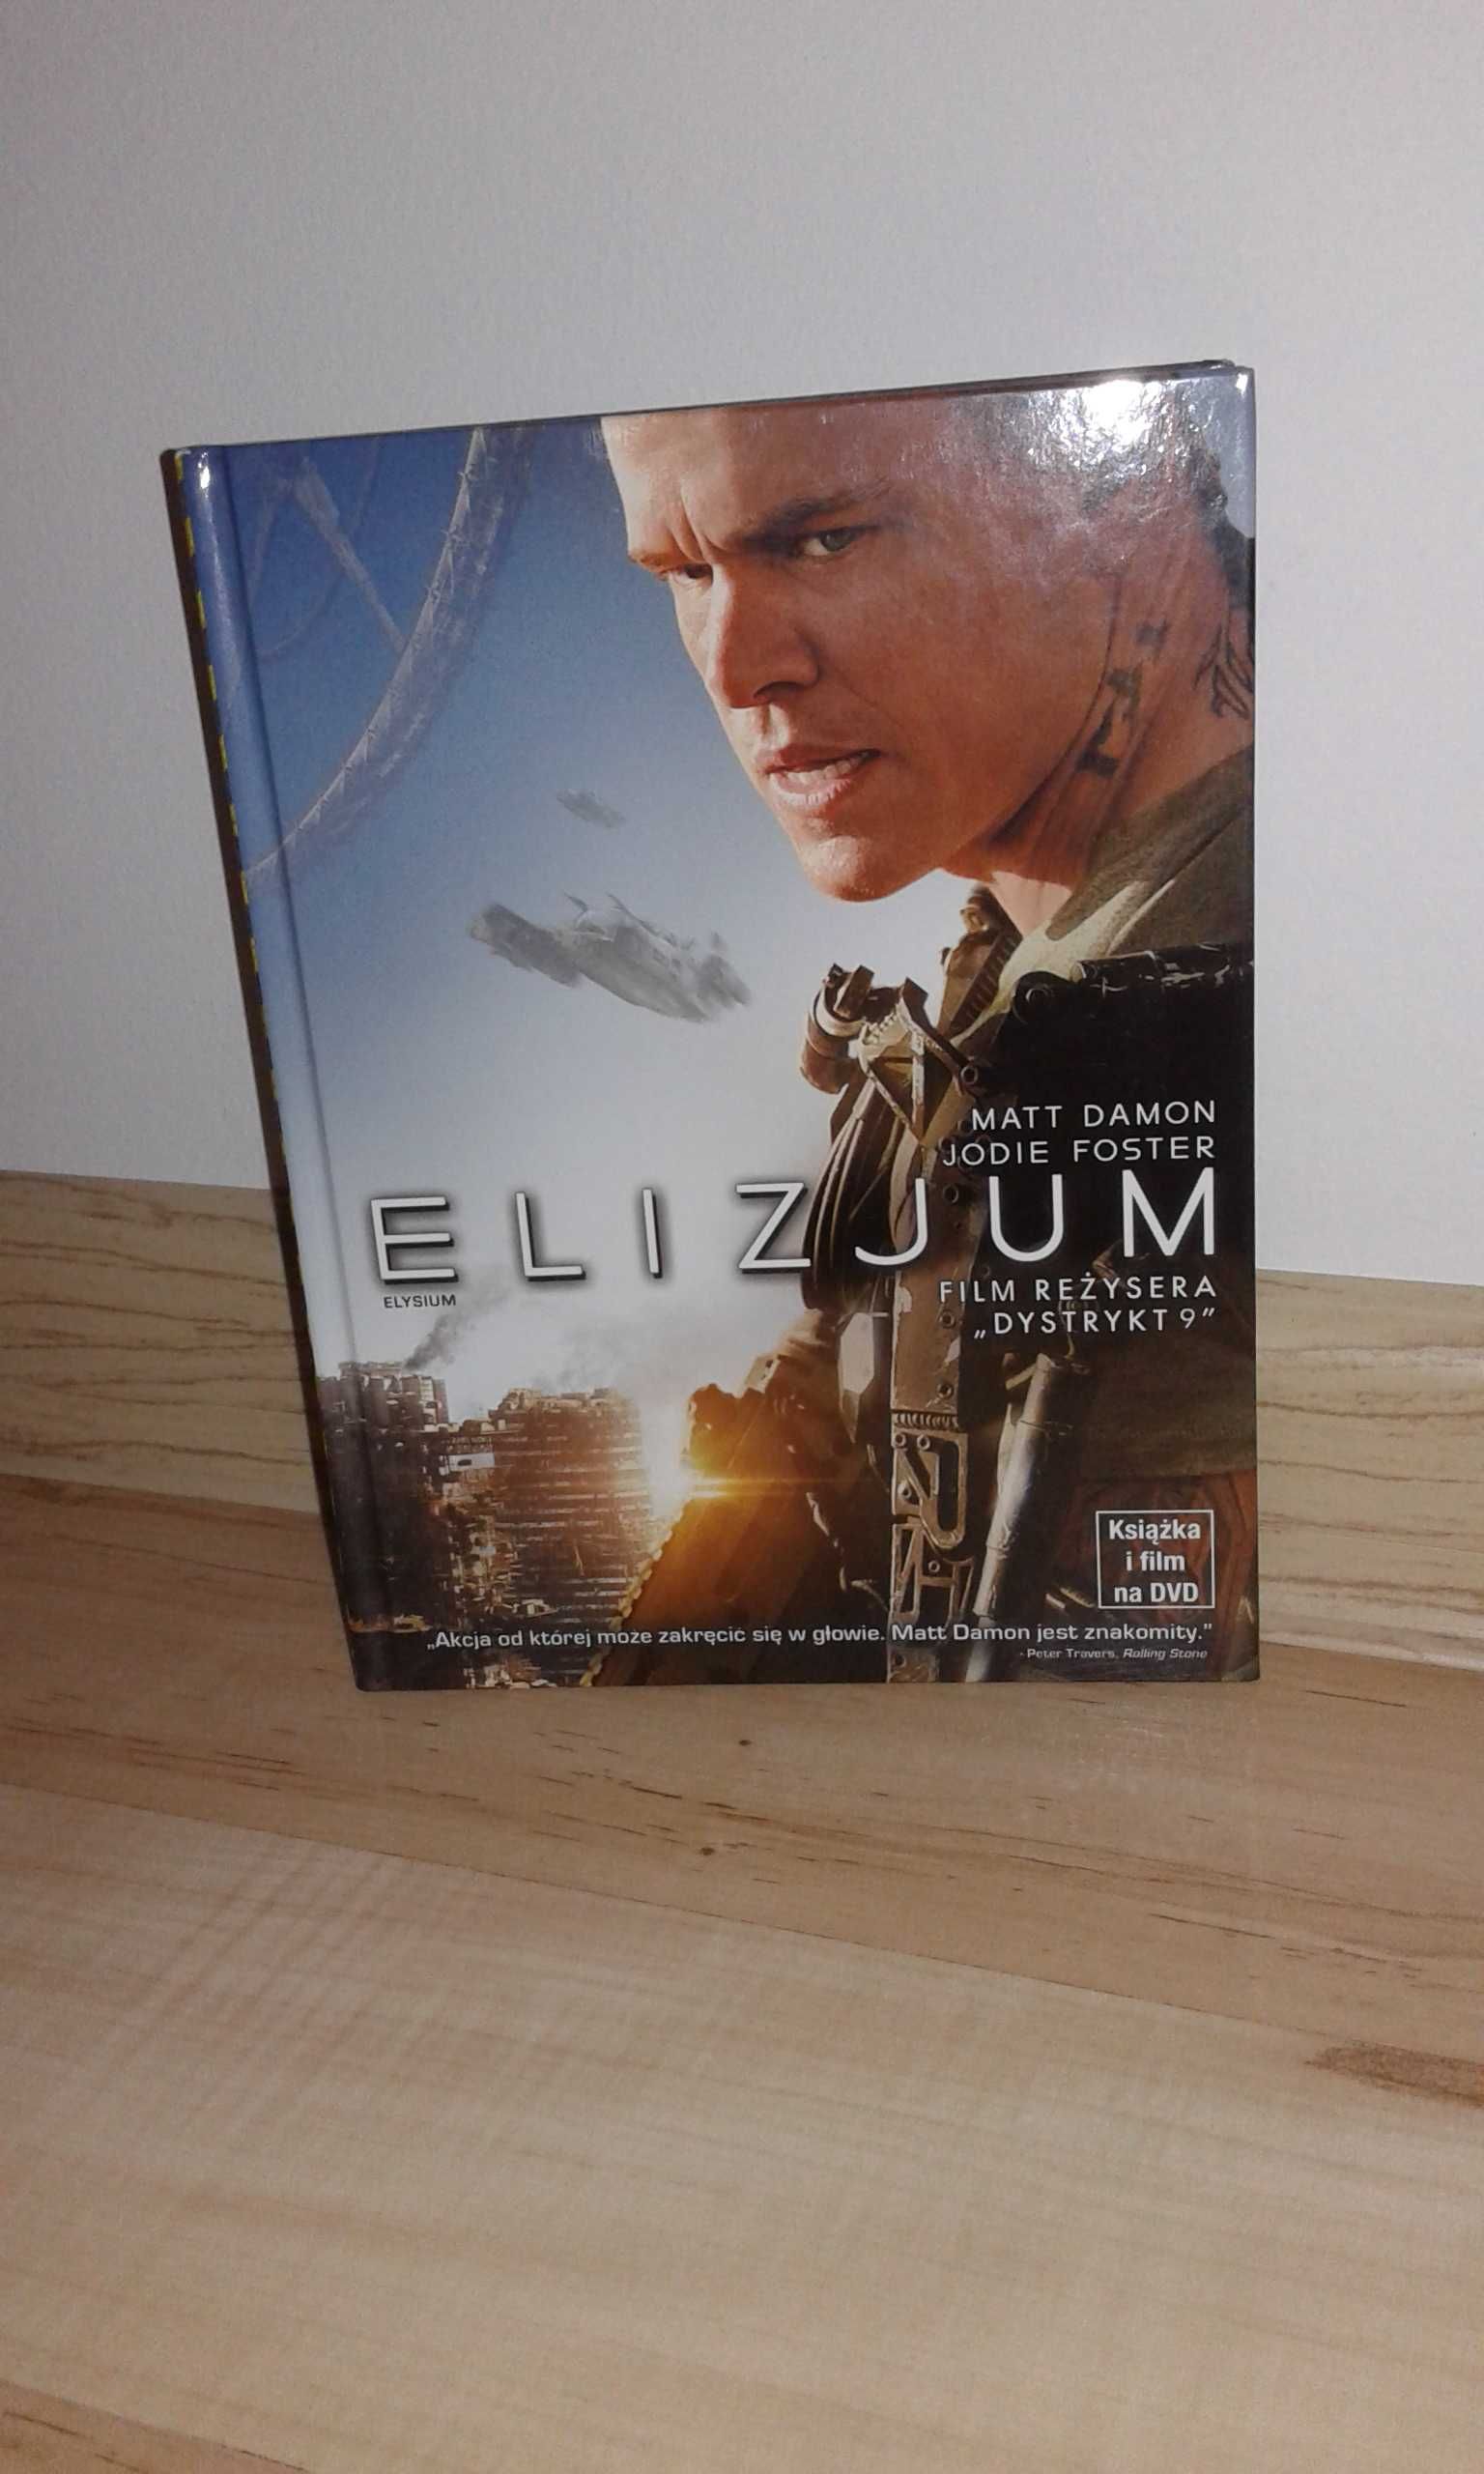 Film DVD ELYSIUM (ELIZJUM) M. Damon, J. Foster